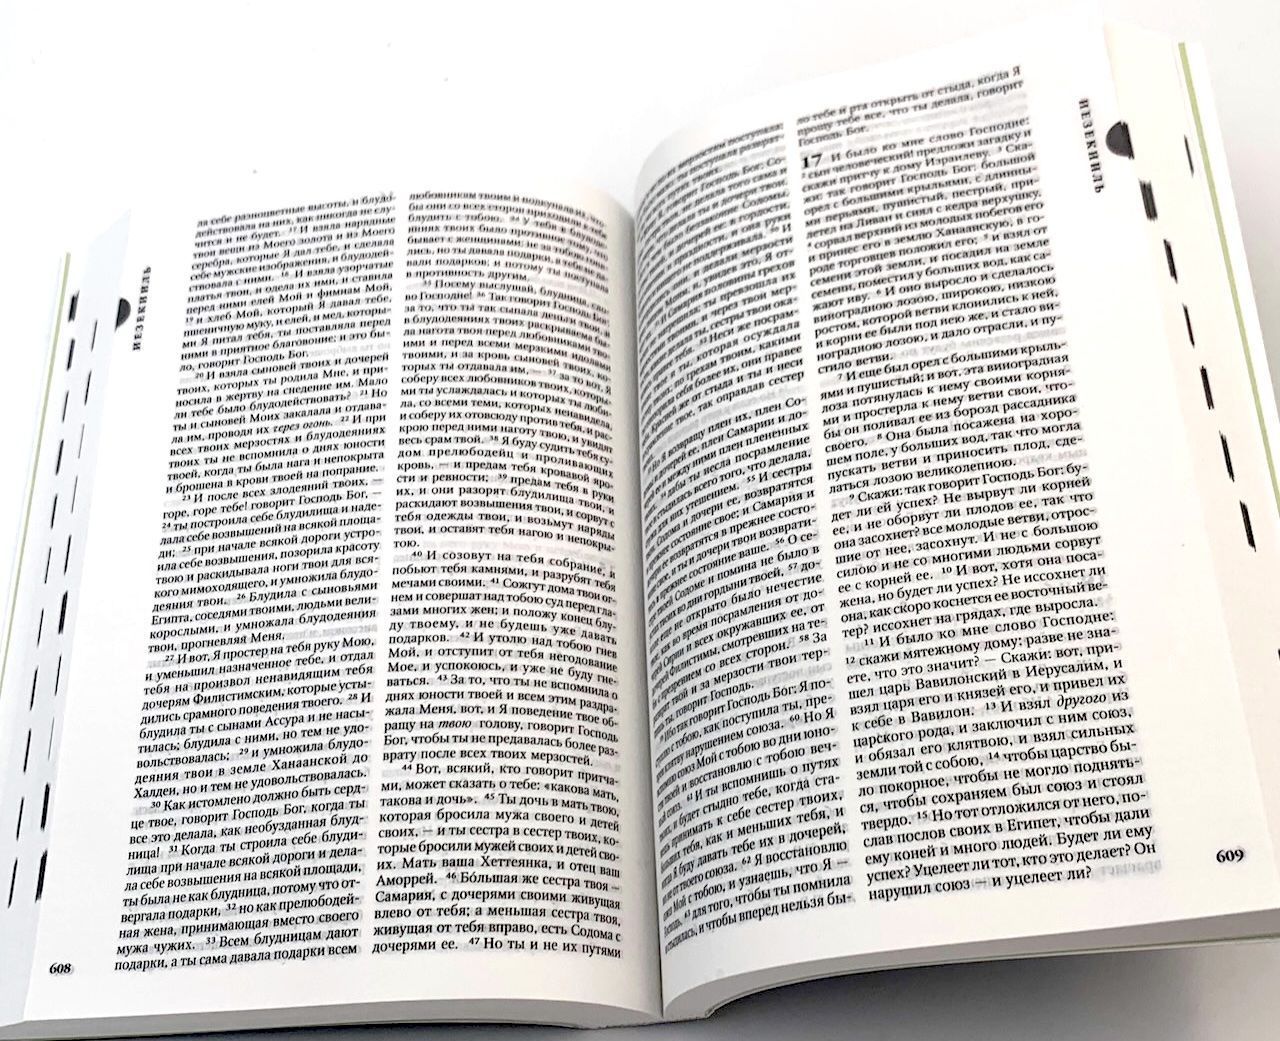 Библия 042 средний формат 114*166 мм, мягкая синяя обложка с изображение хлебов и рыб